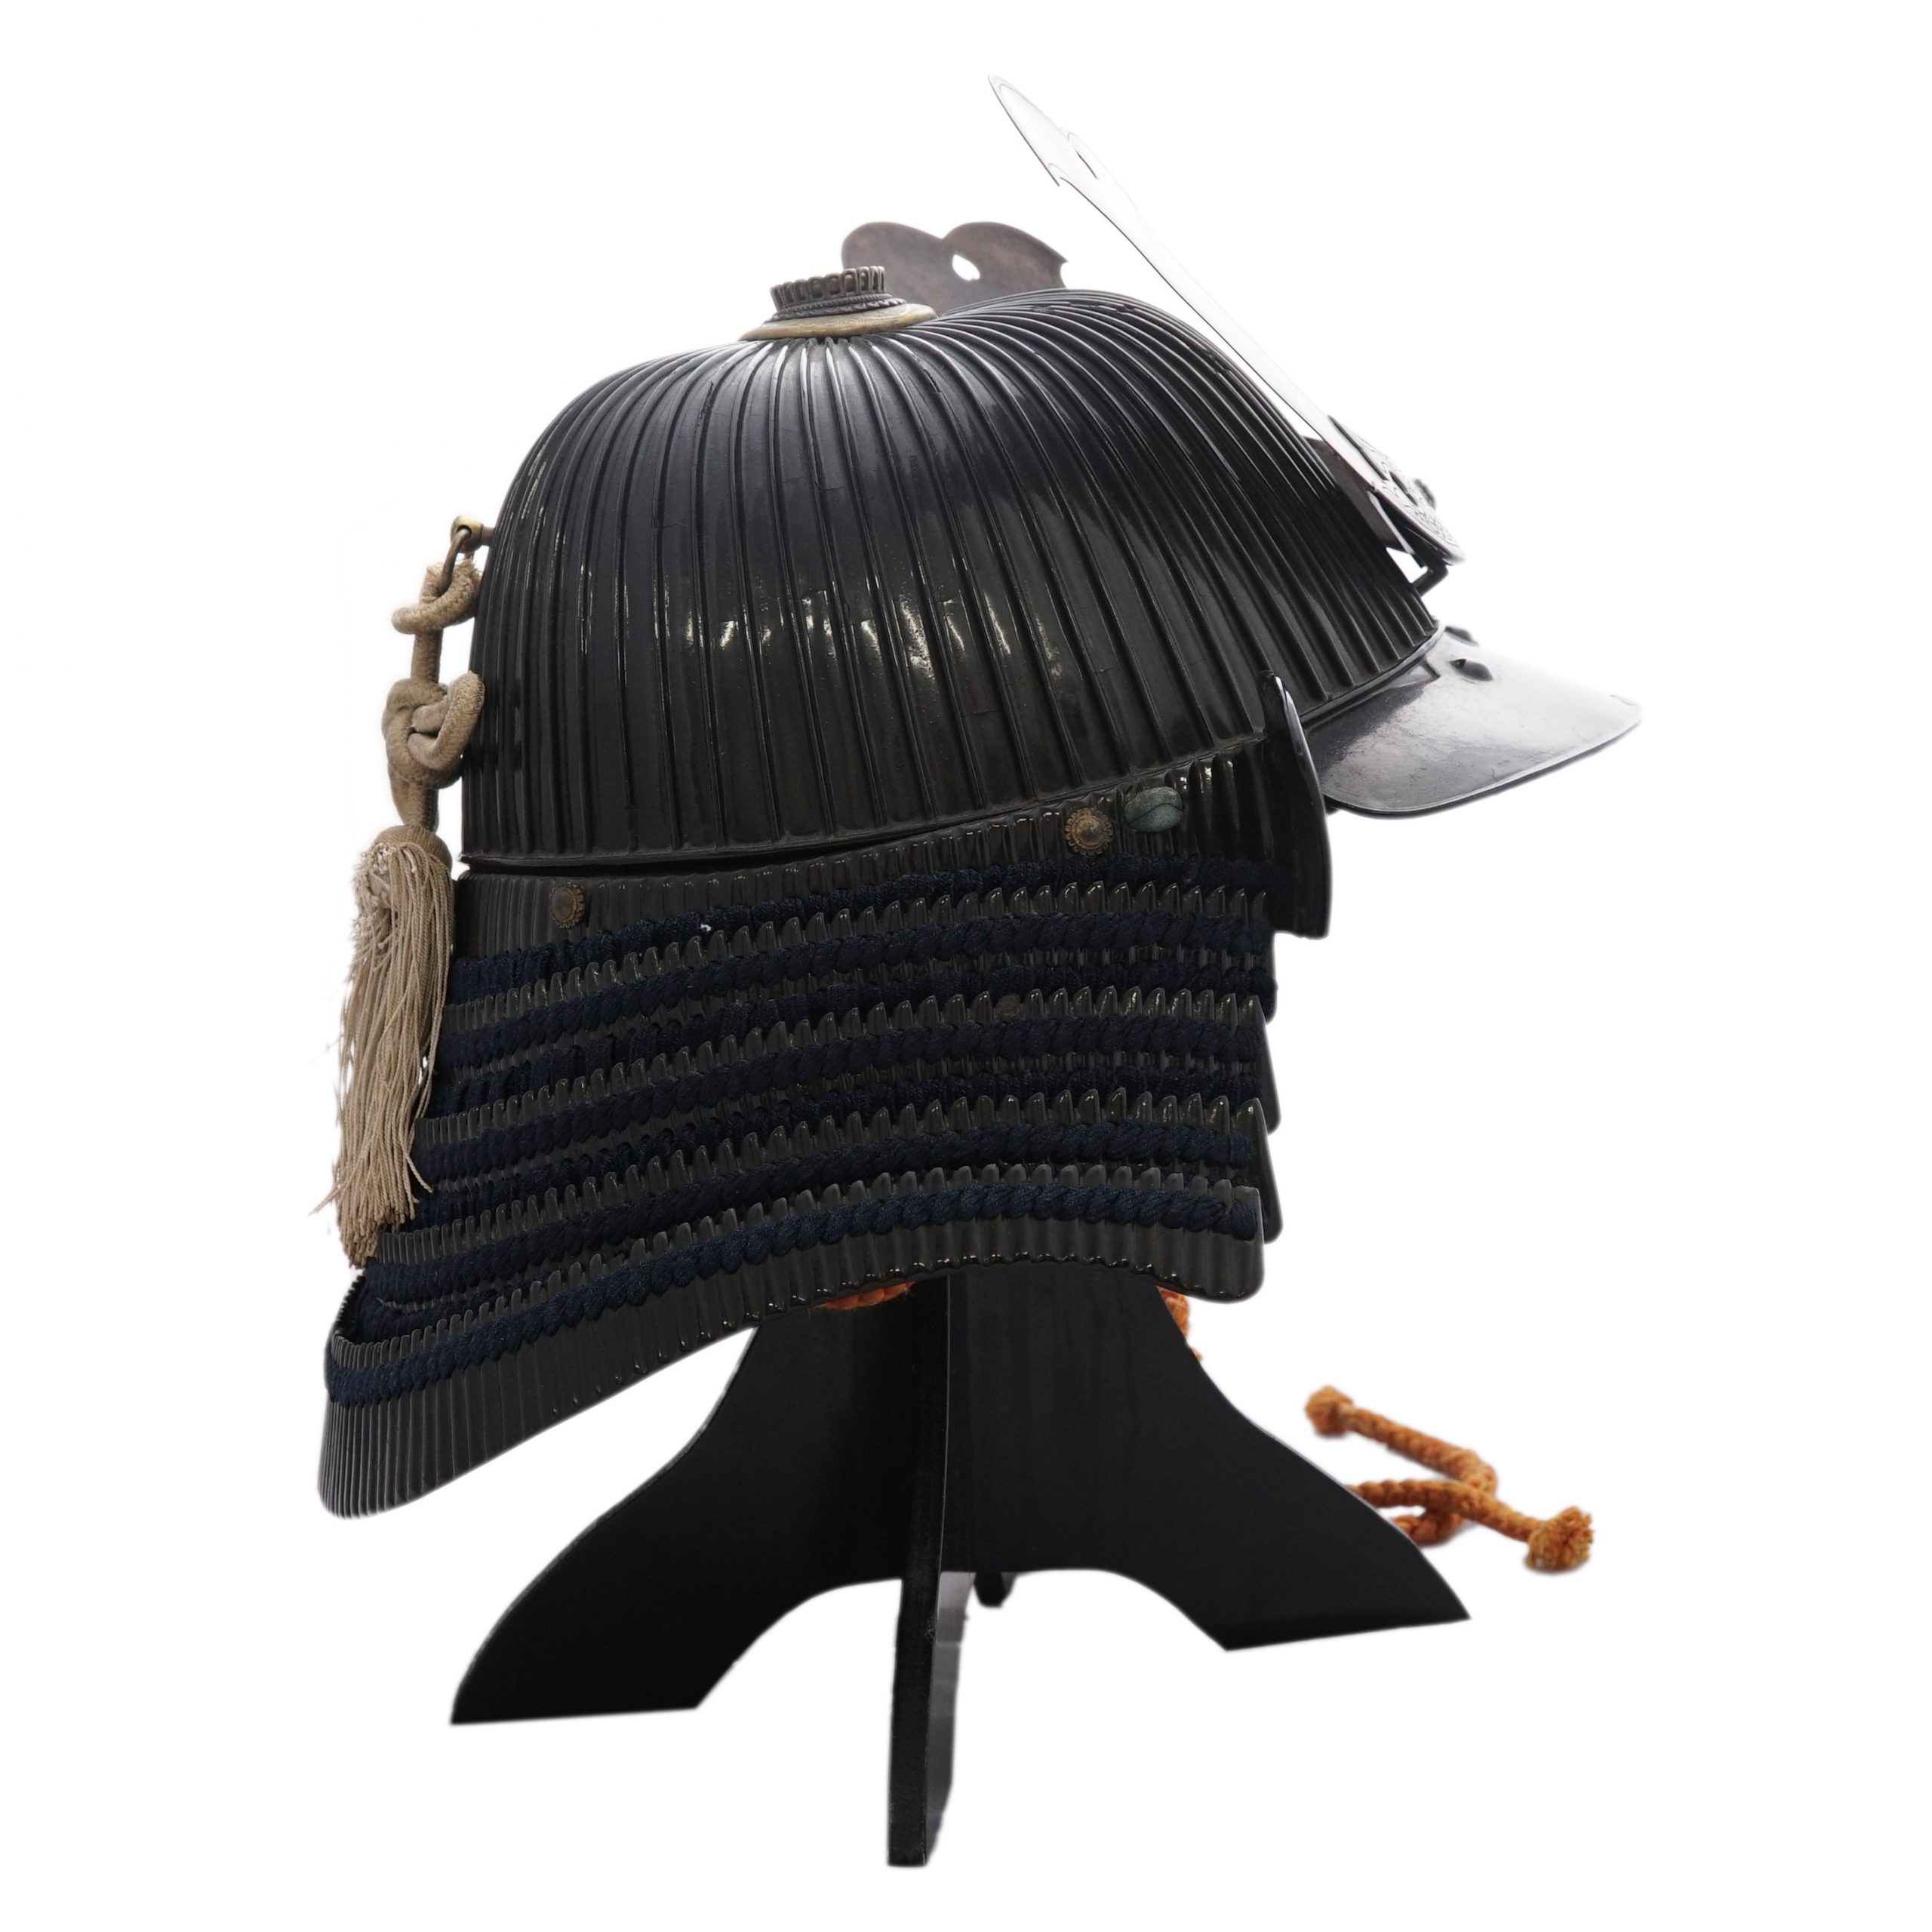 Antique Samurai Helmet 六十二間筋兜 (KT-16) | Samurai Museum Shop